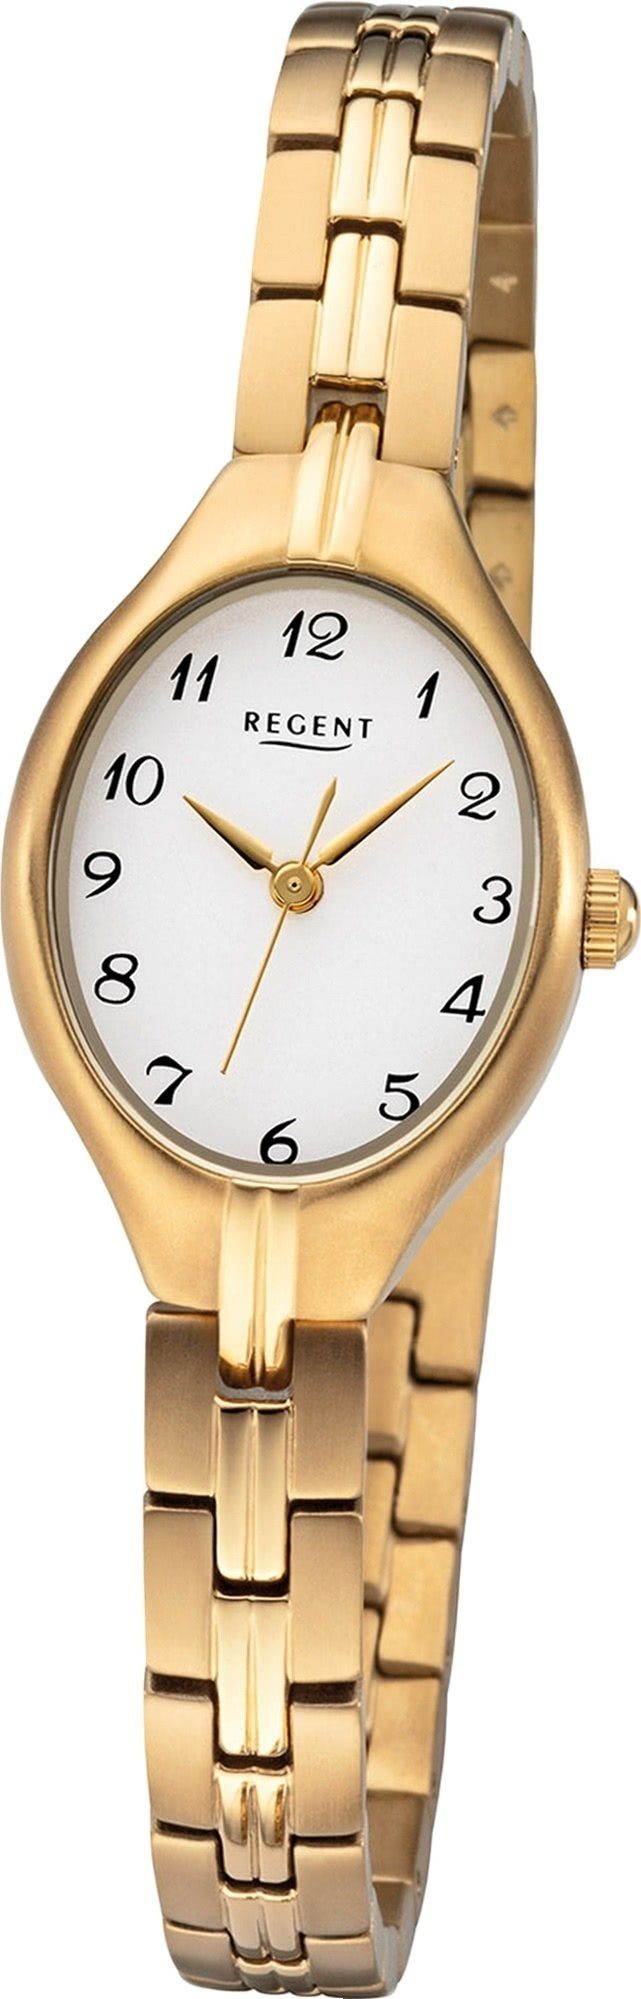 Damen Uhren Regent Quarzuhr D2URF1163 Regent Metall Damen Uhr F-1163 Analoge, Damenuhr mit Metallarmband, ovales Gehäuse, mittel